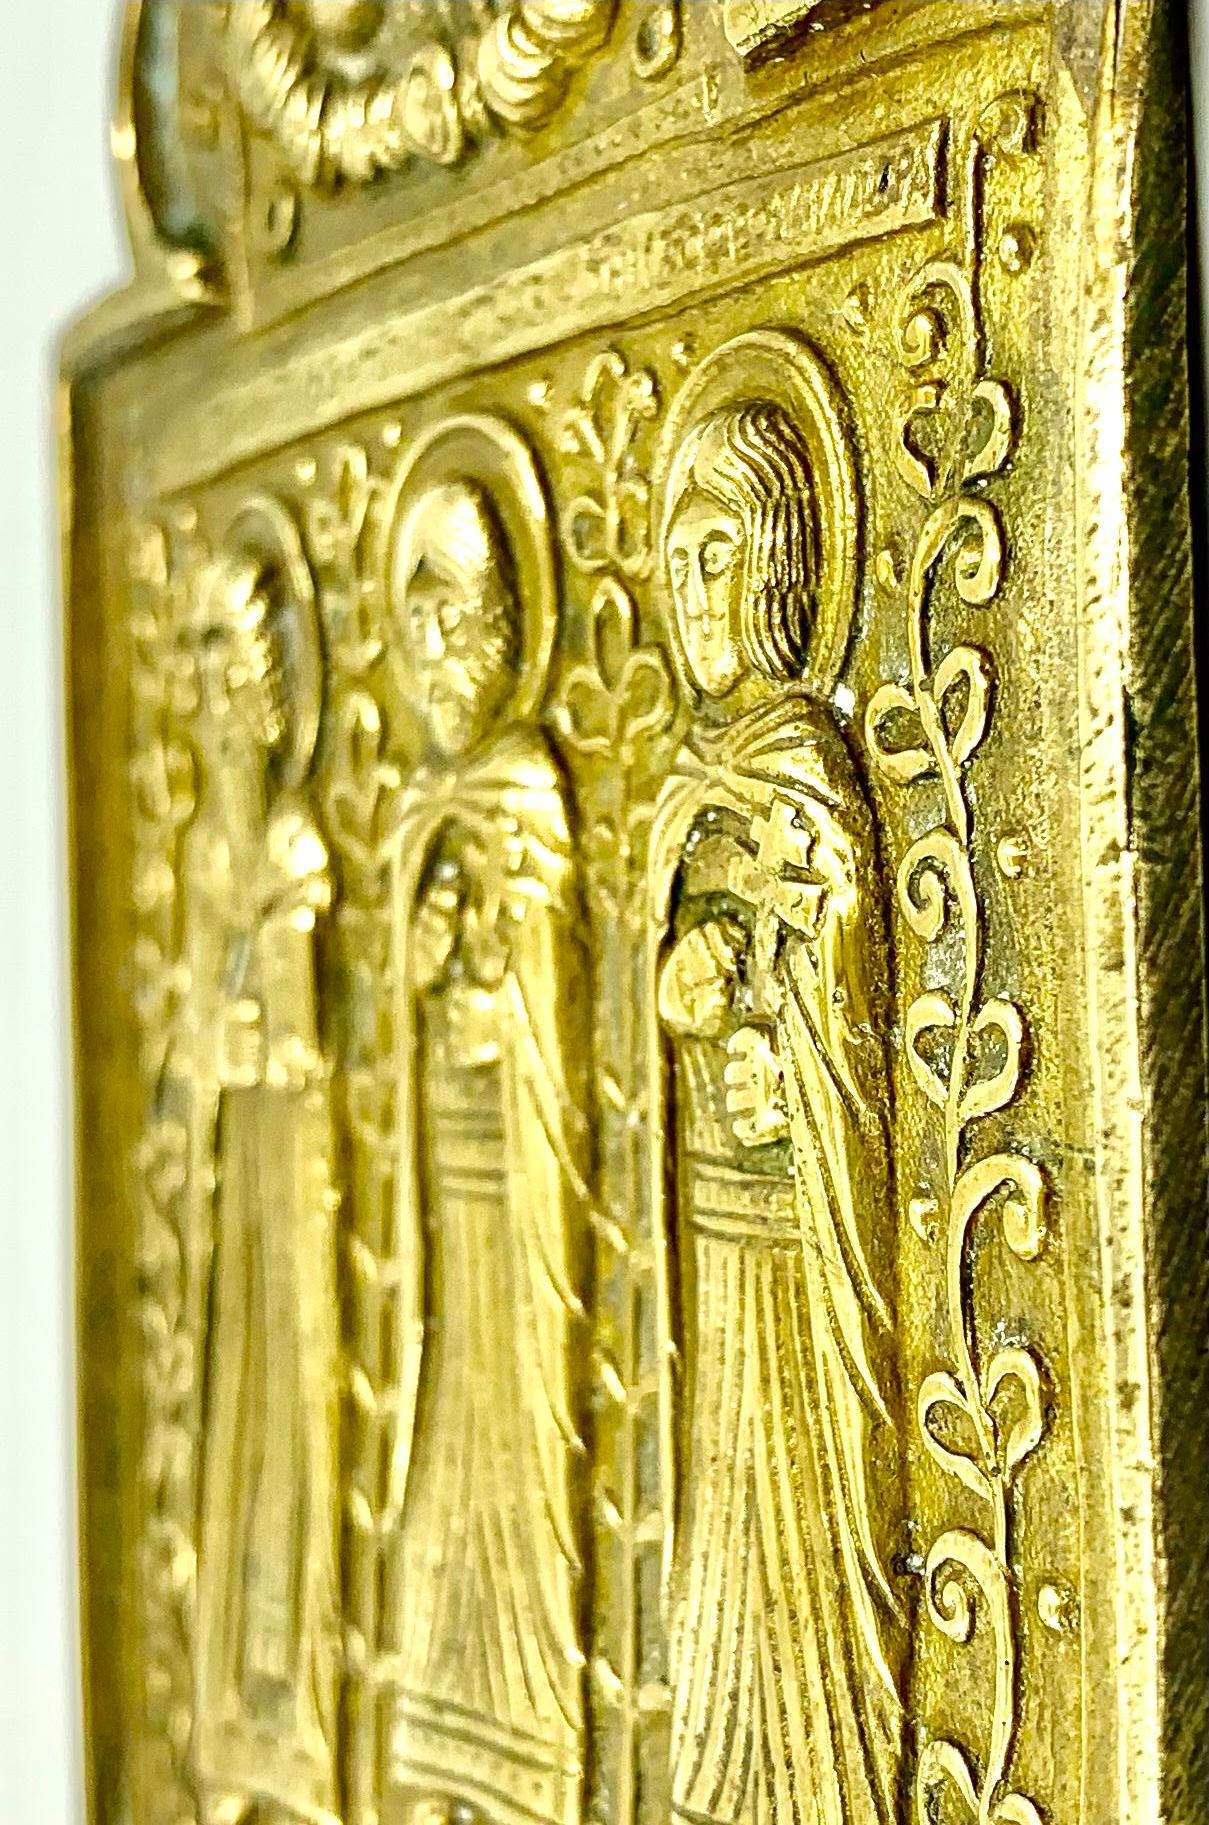 Schöne, ungewöhnliche russische Bronze-Reiseikone aus dem späten 18. Jahrhundert mit den Figuren des Heiligen Antipas, des Heiligen Florus und des Heiligen Lavros. 

Der Heilige Florus und der Heilige Lavros sind die Schutzheiligen der Pferde in